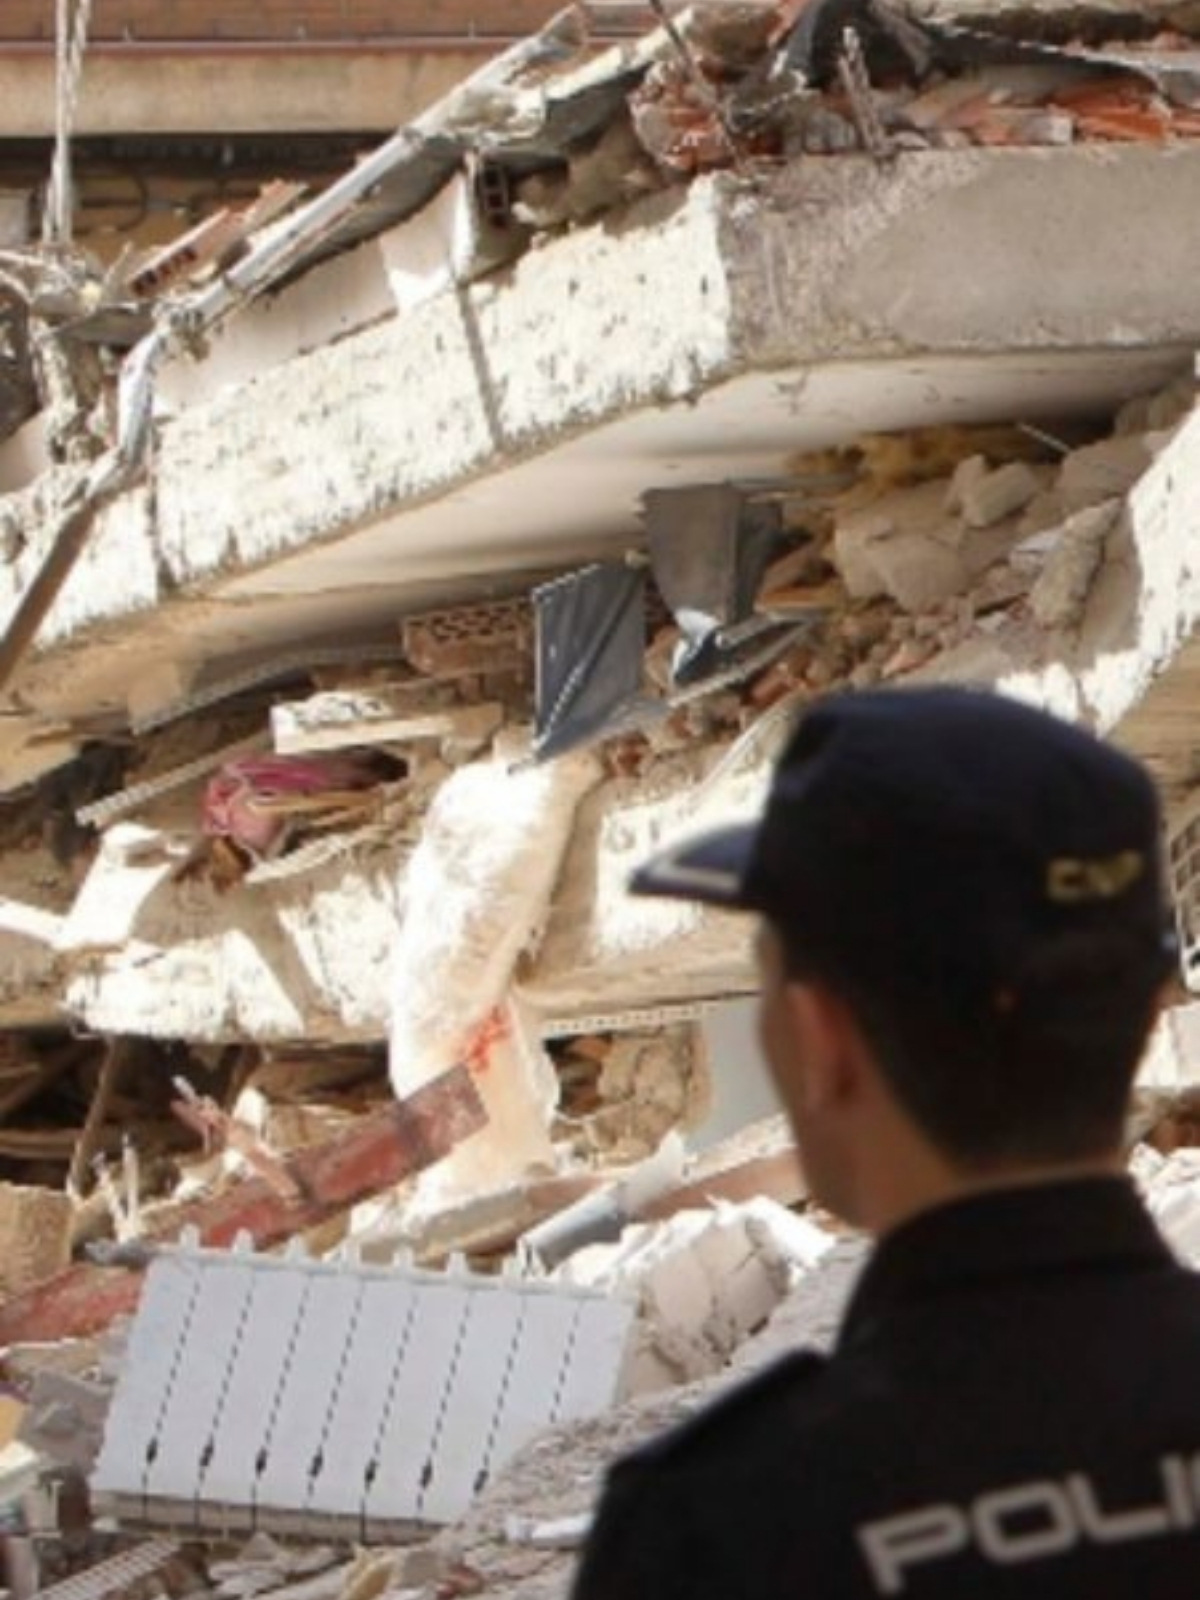 Imagen de escombros tras el terremoto de Lorca, el 11 de mayo de 2011